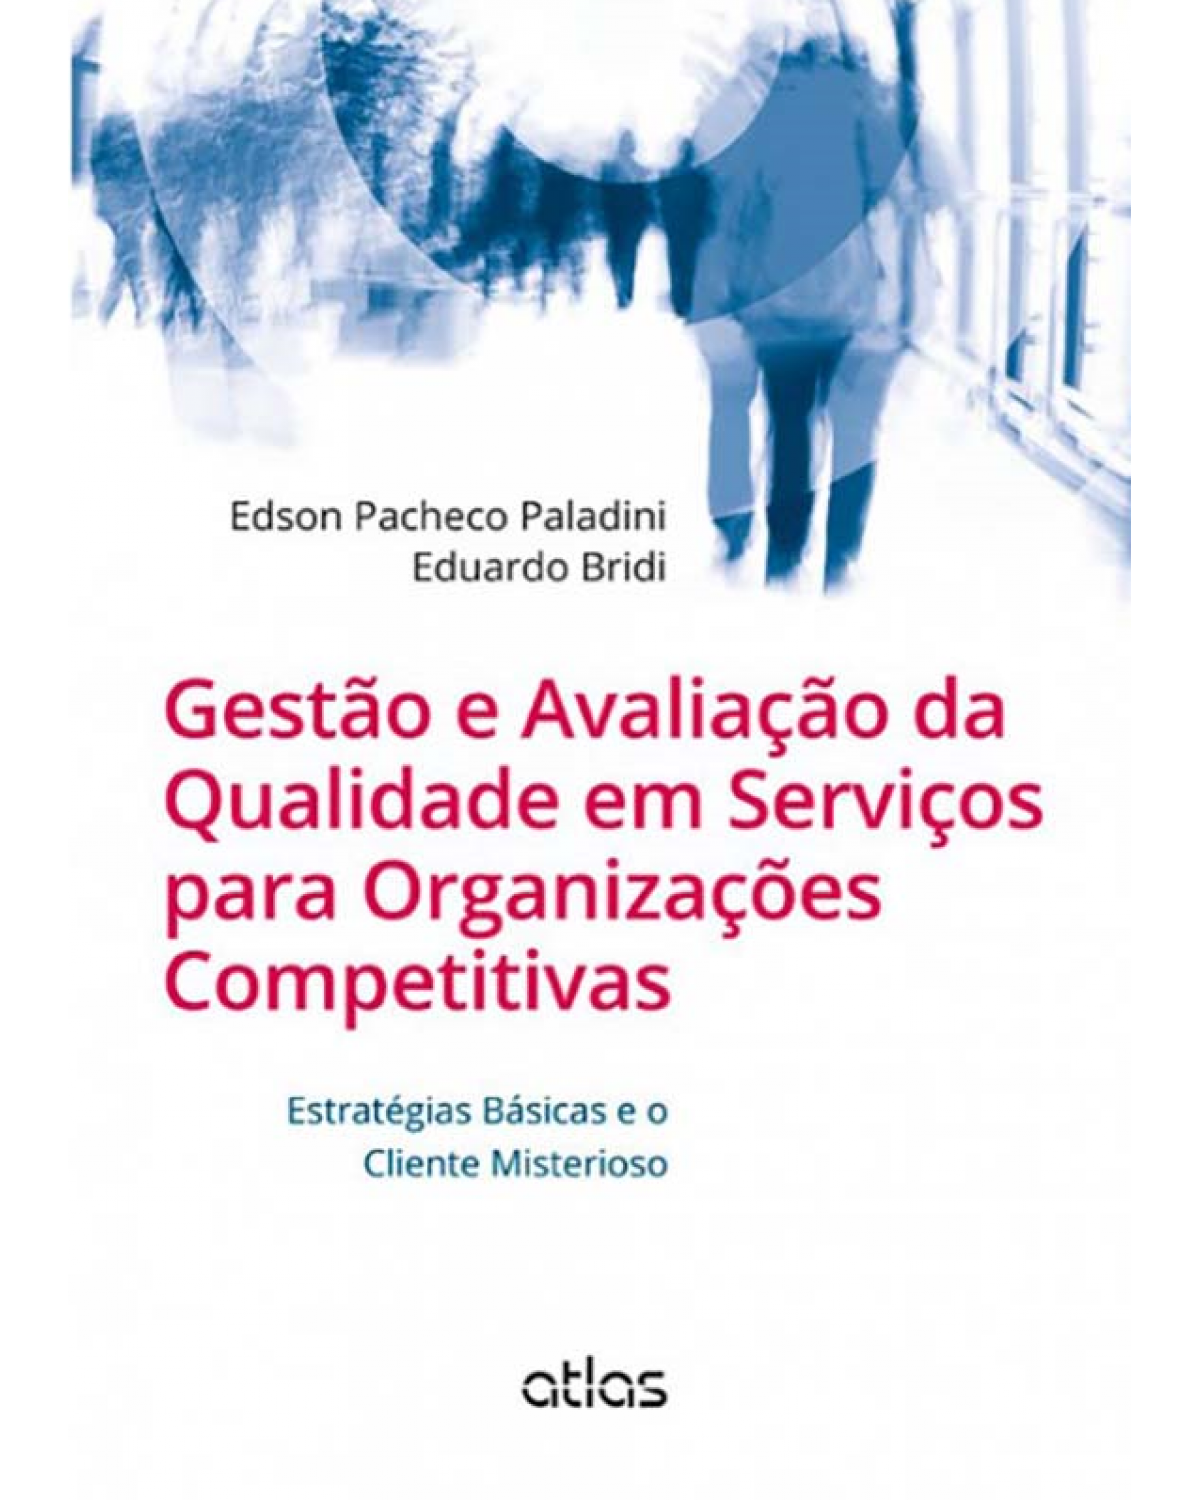 Gestão e avaliação da qualidade em serviços para organizações competitivas - Estratégias básicas e o cliente misterioso - 1ª Edição | 2013